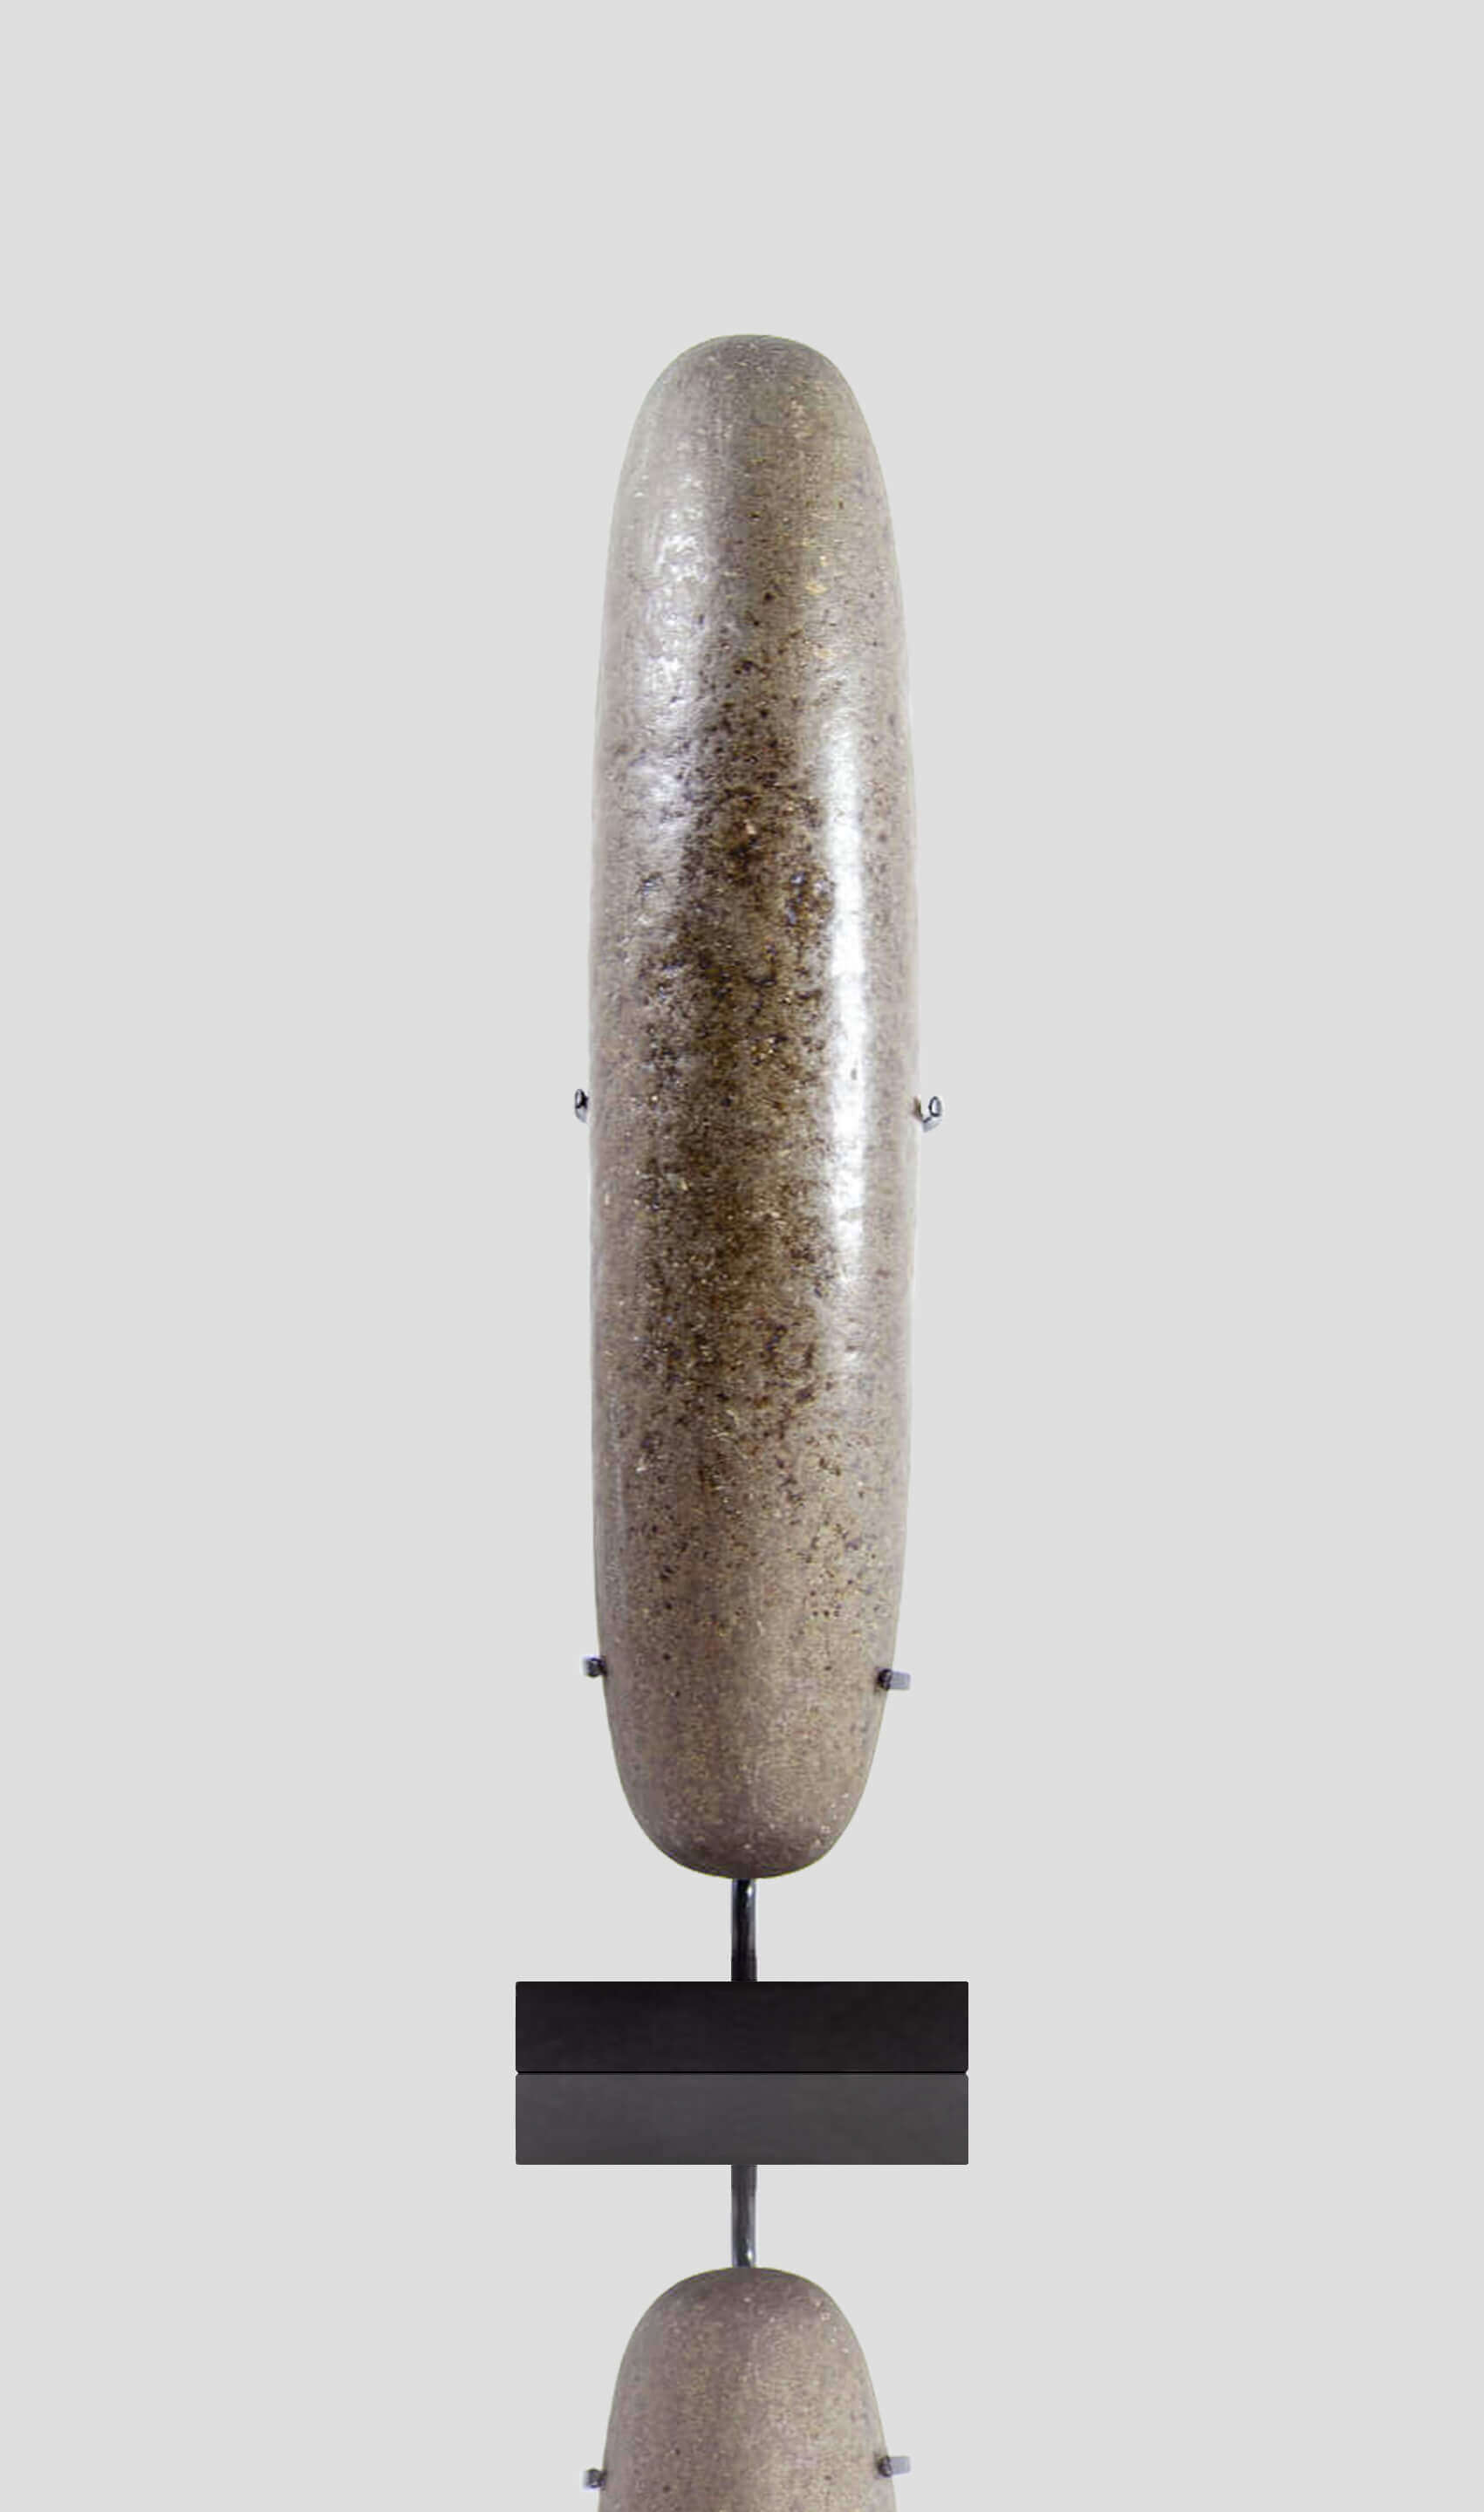 アーティファクト 新石器時代 カプシアン 手杵 [紀元前 8,500 年] 300mm